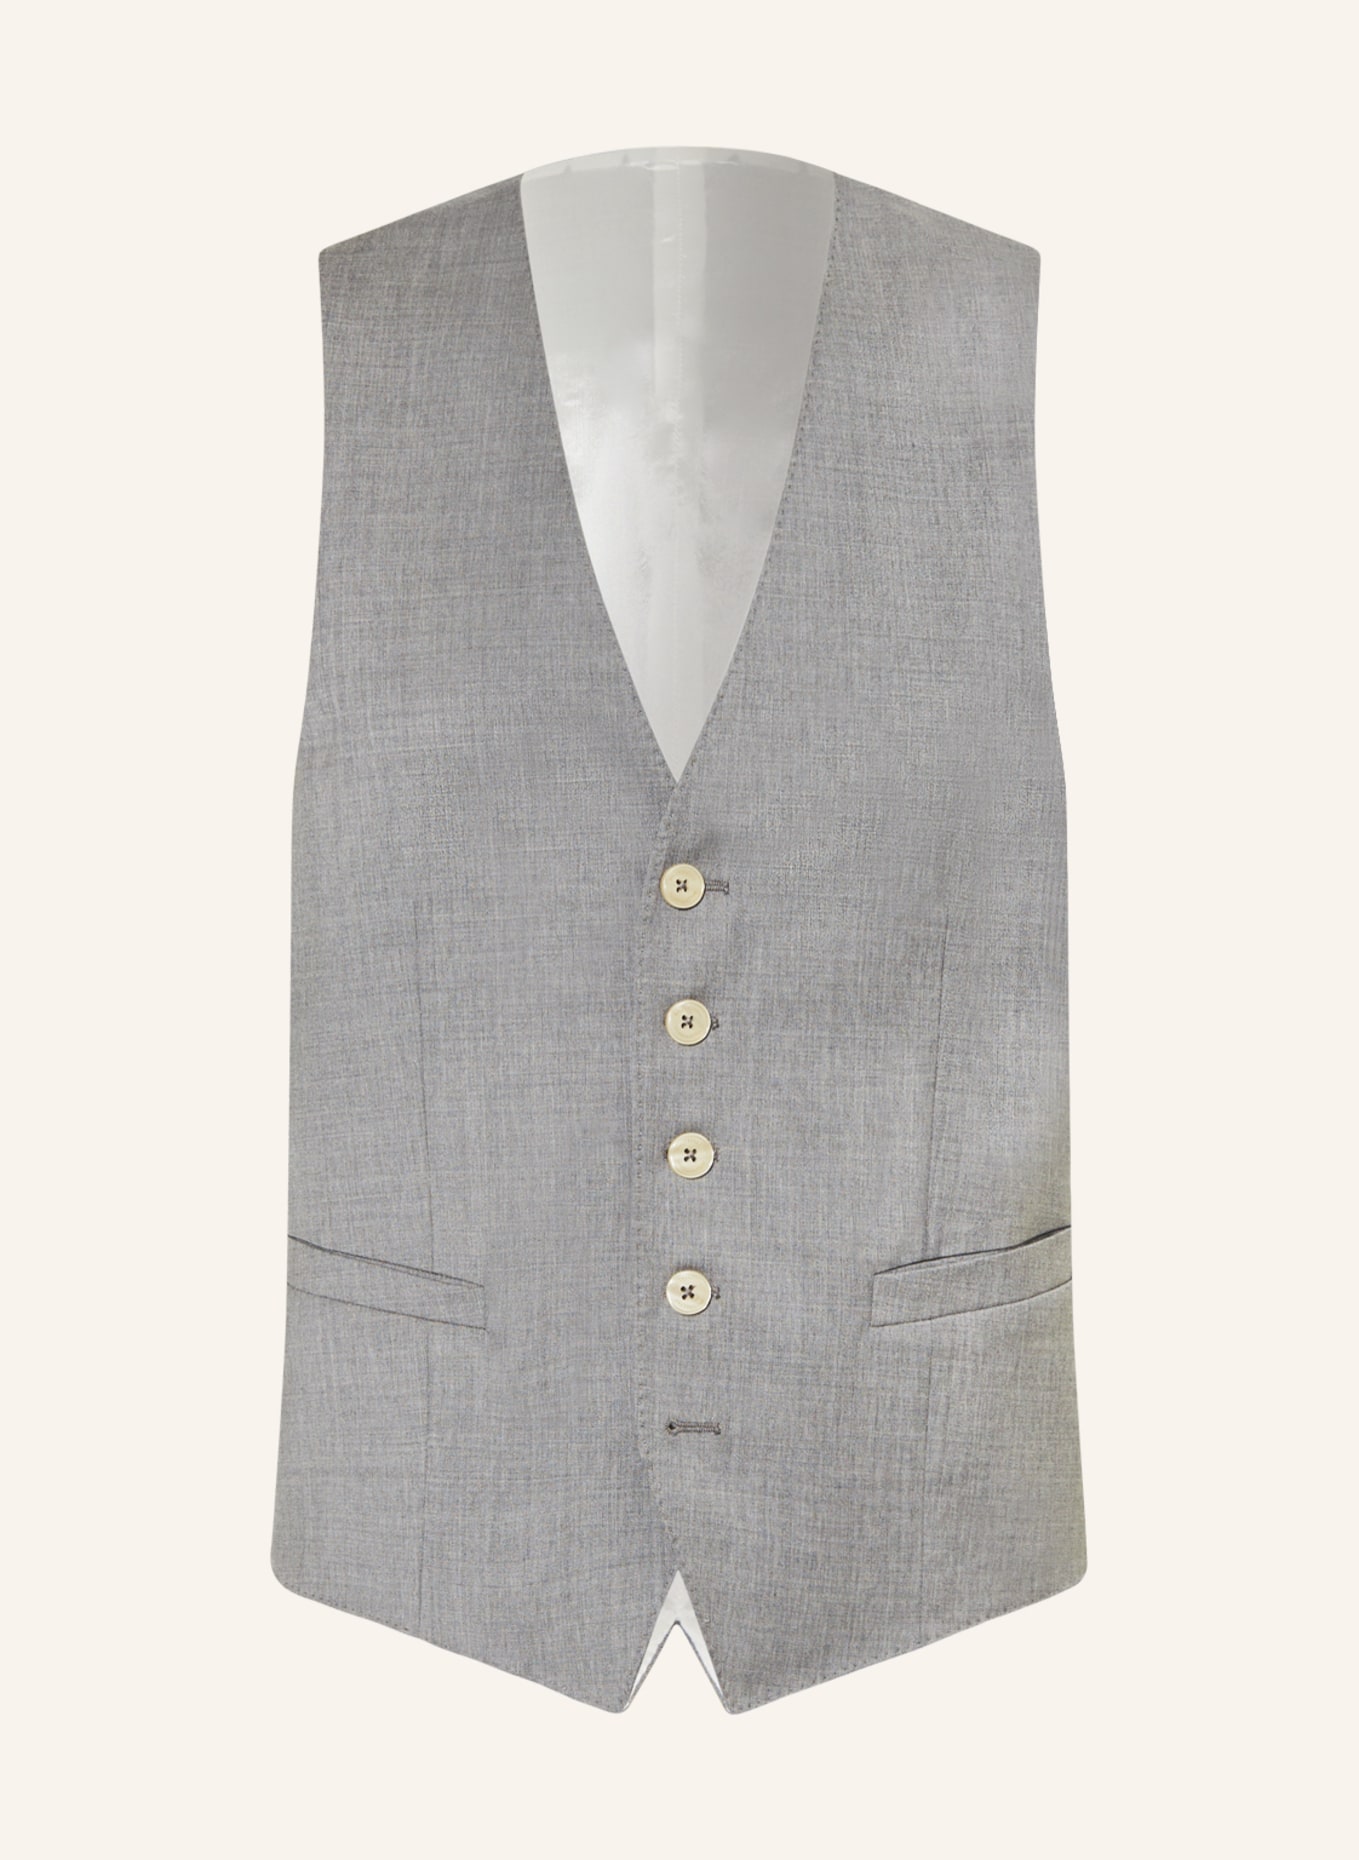 BALDESSARINI Suit vest, Color: 1113 Lunar Rock (Image 1)